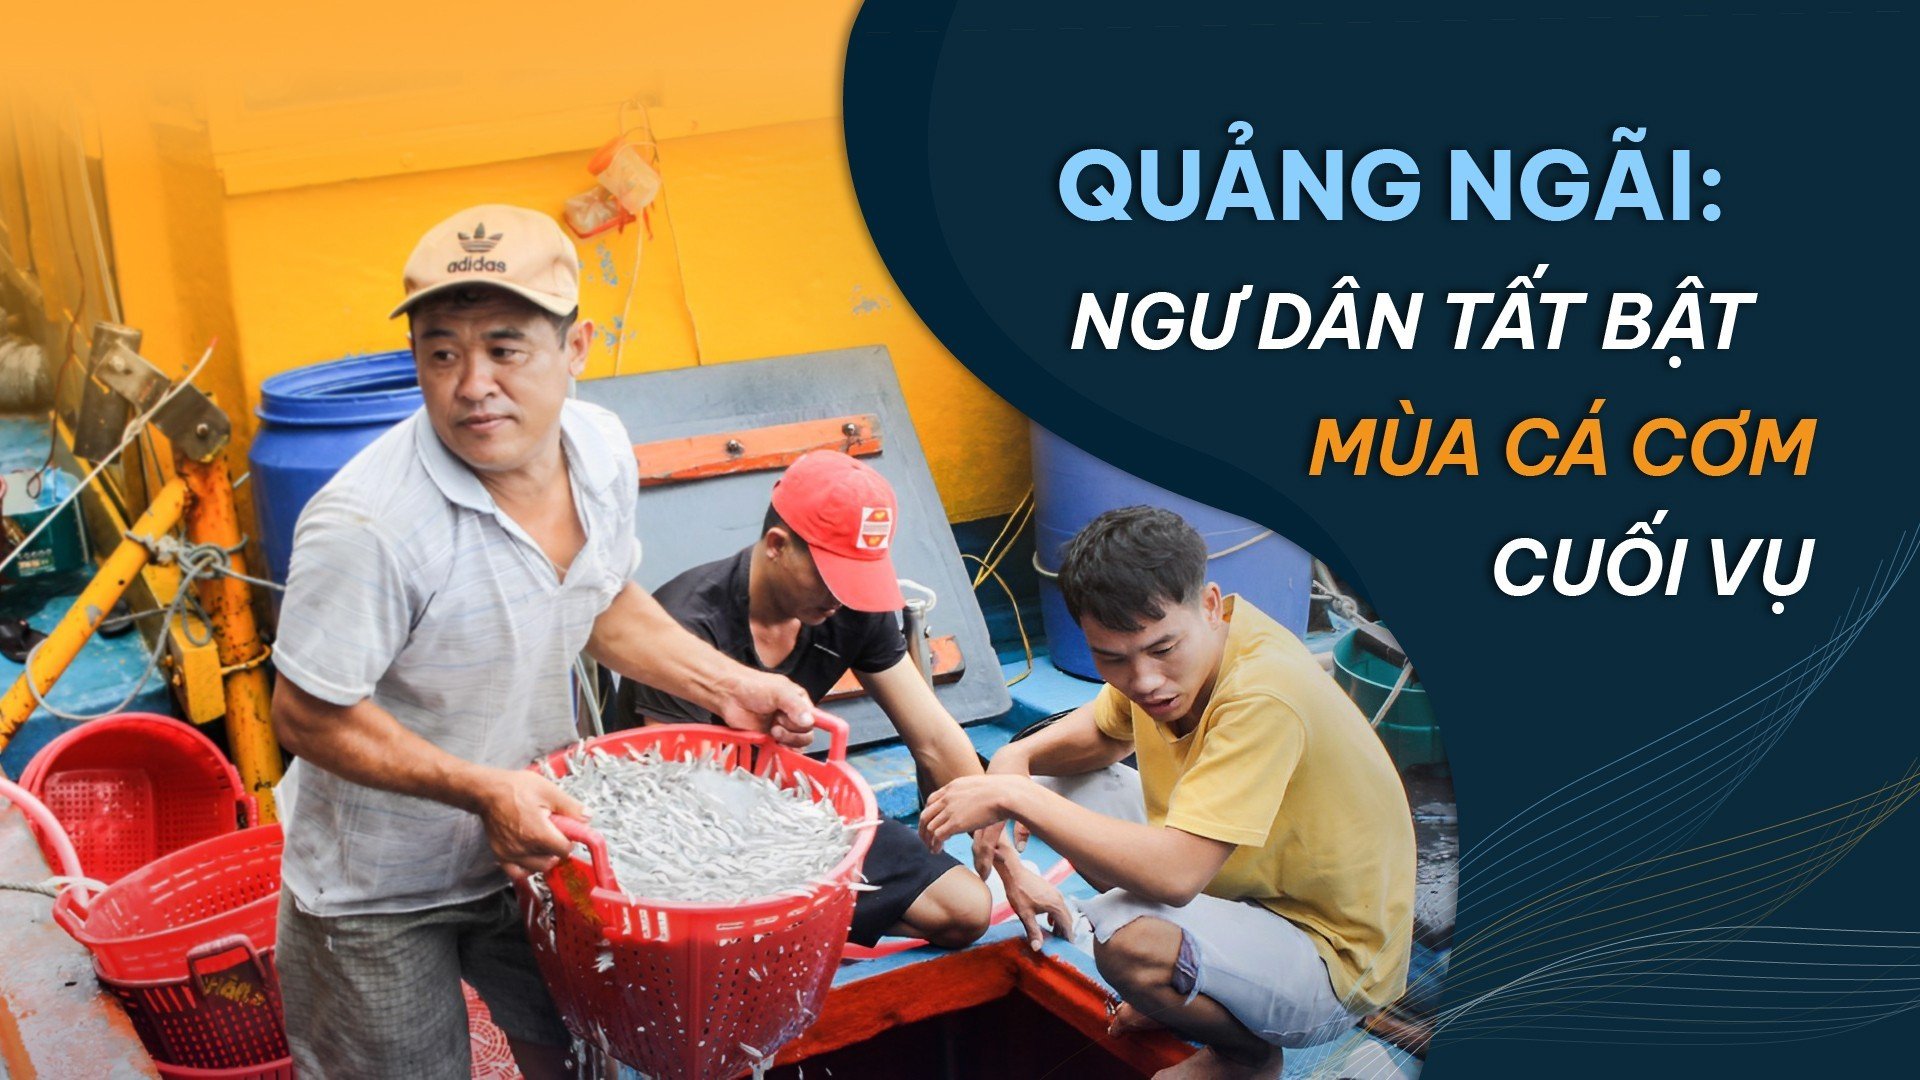 Quảng Ngãi: Ngư dân tất bật mùa cá cơm cuối vụ